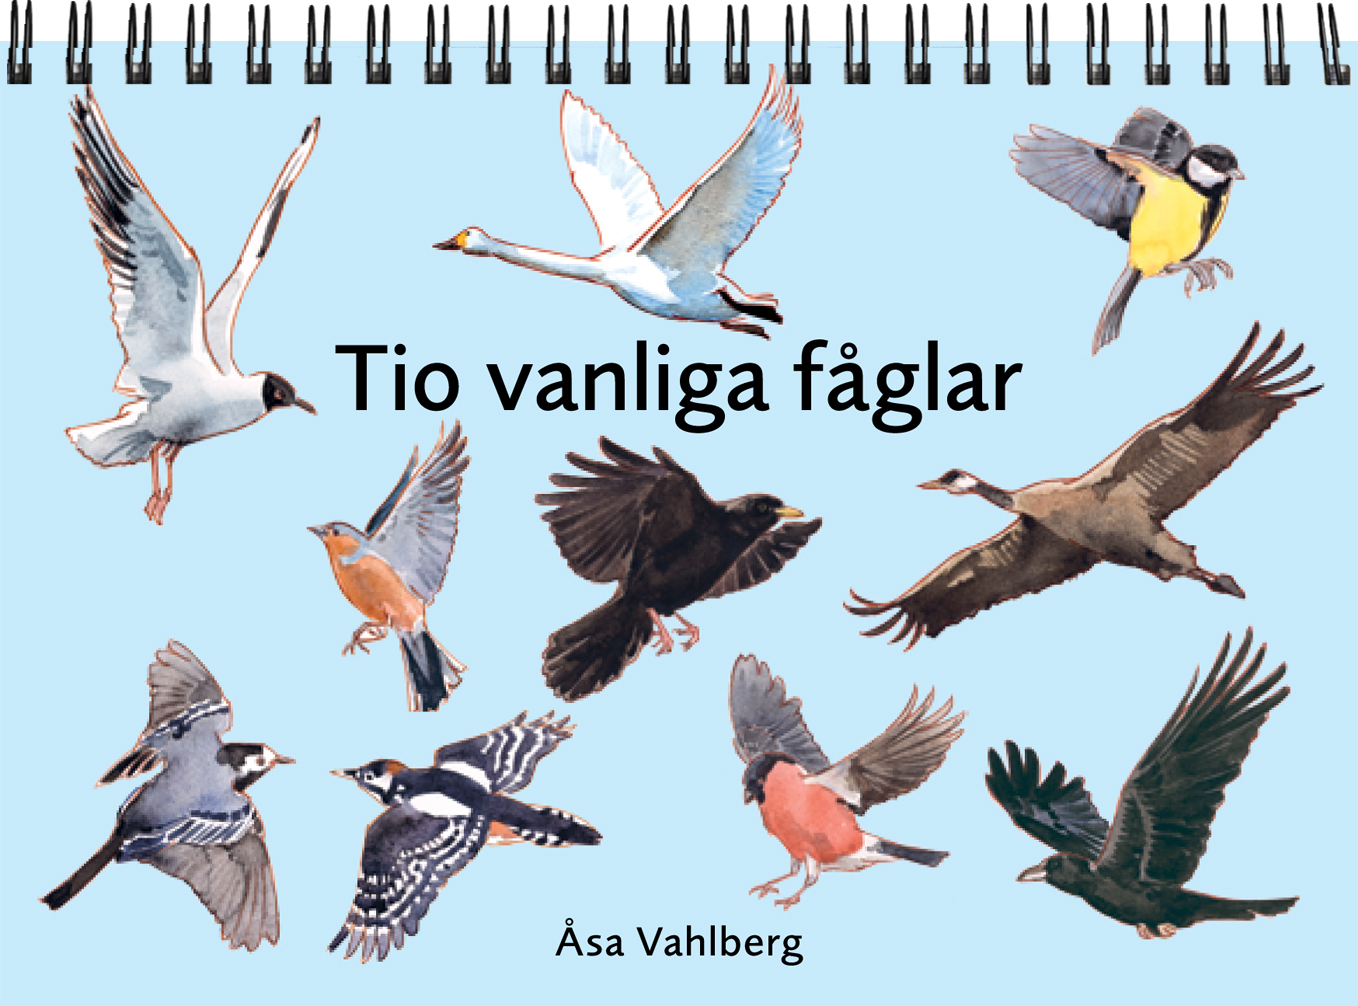 Diverse fåglar mot en ljusblå bakgrund.